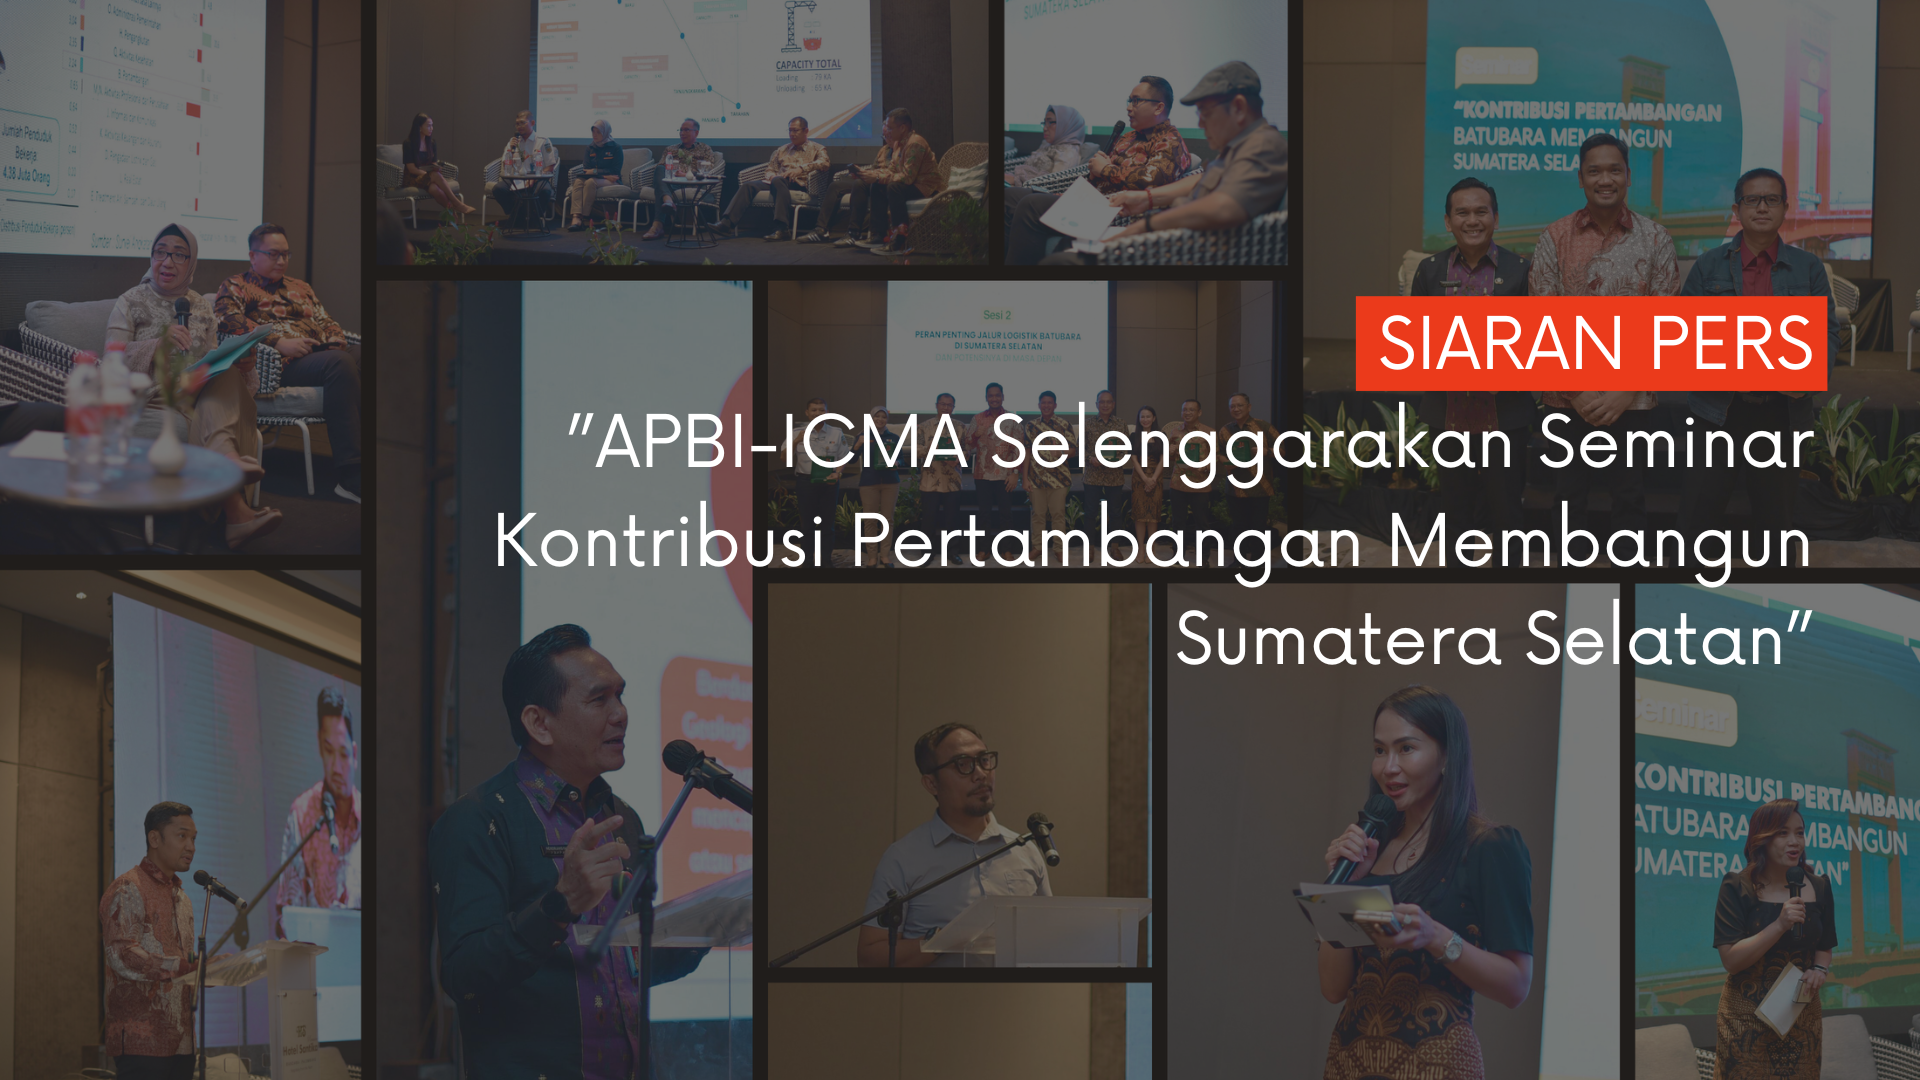 SIARAN PERS ”APBI-ICMA Selenggarakan Seminar Kontribusi Pertambangan Membangun Sumatera Selatan”